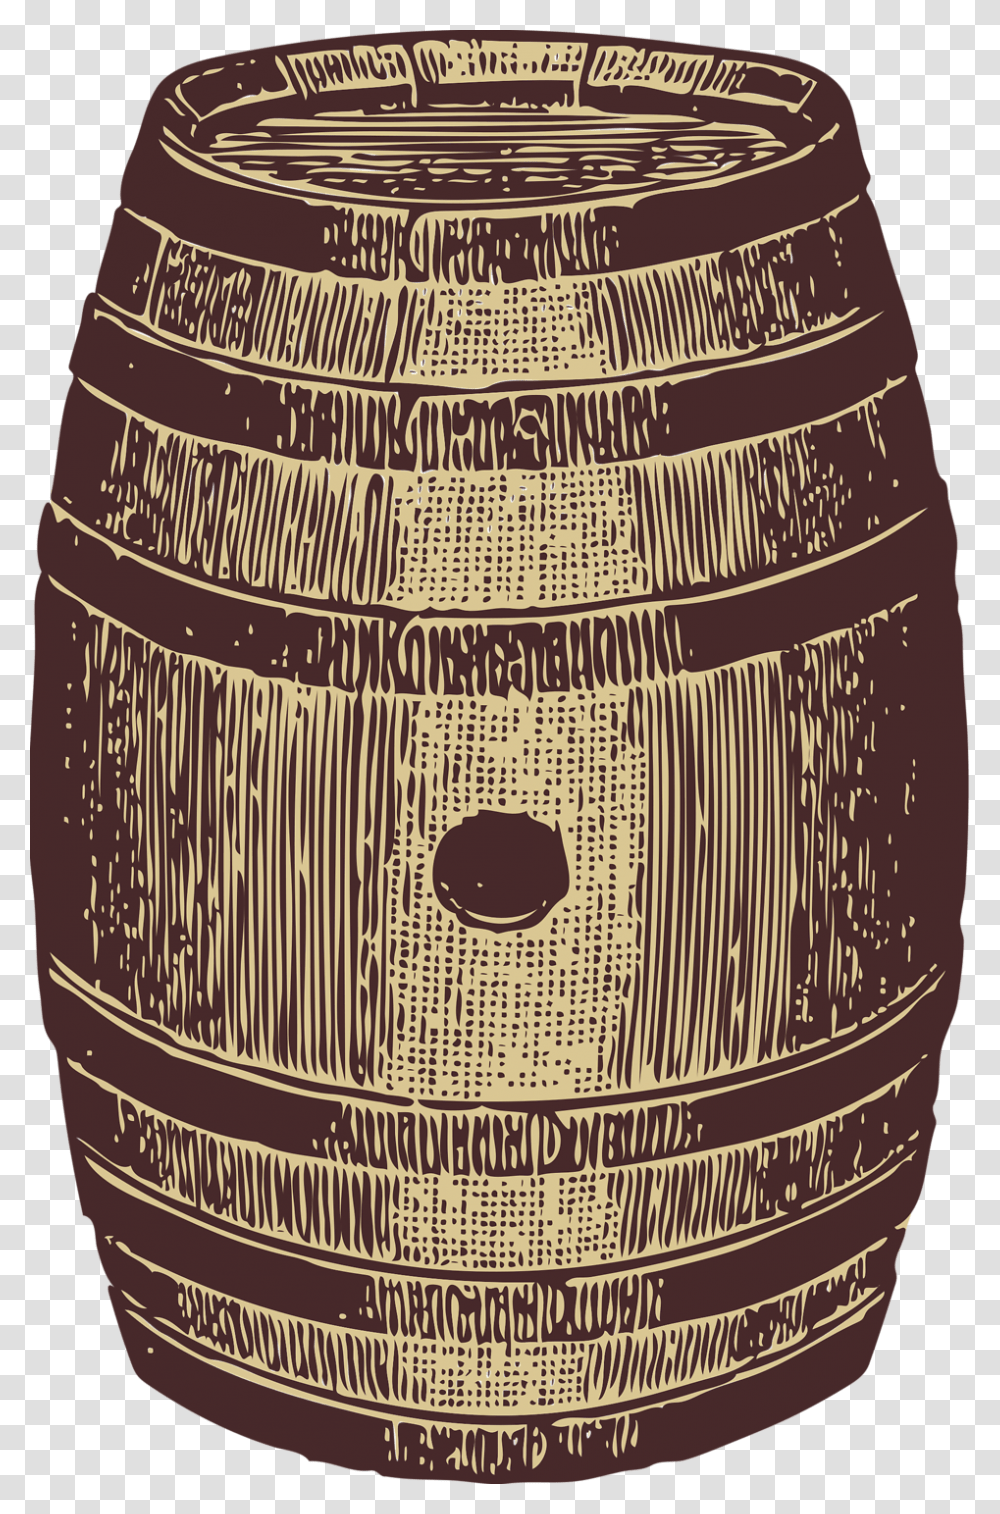 Clip Art Barrel Background Barrel Clip Art, Alcohol, Beverage, Drink, Keg Transparent Png